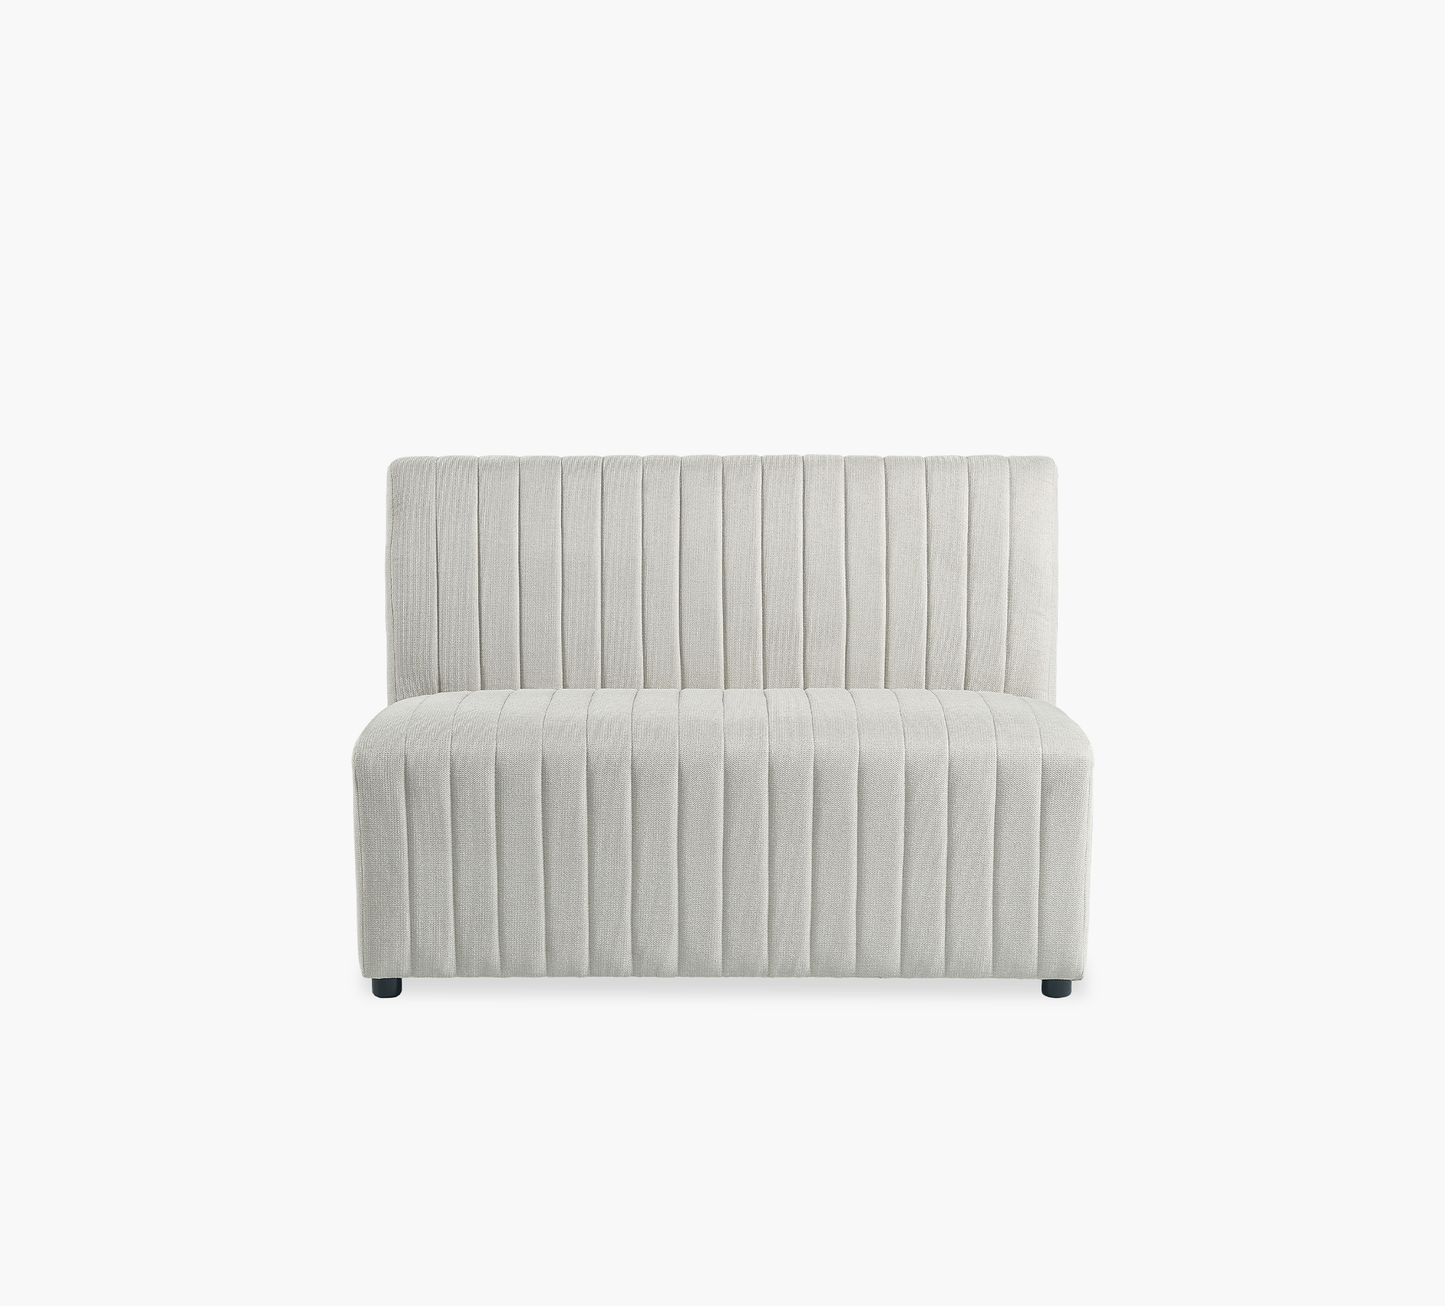 Jemma Long Bench Upholstered